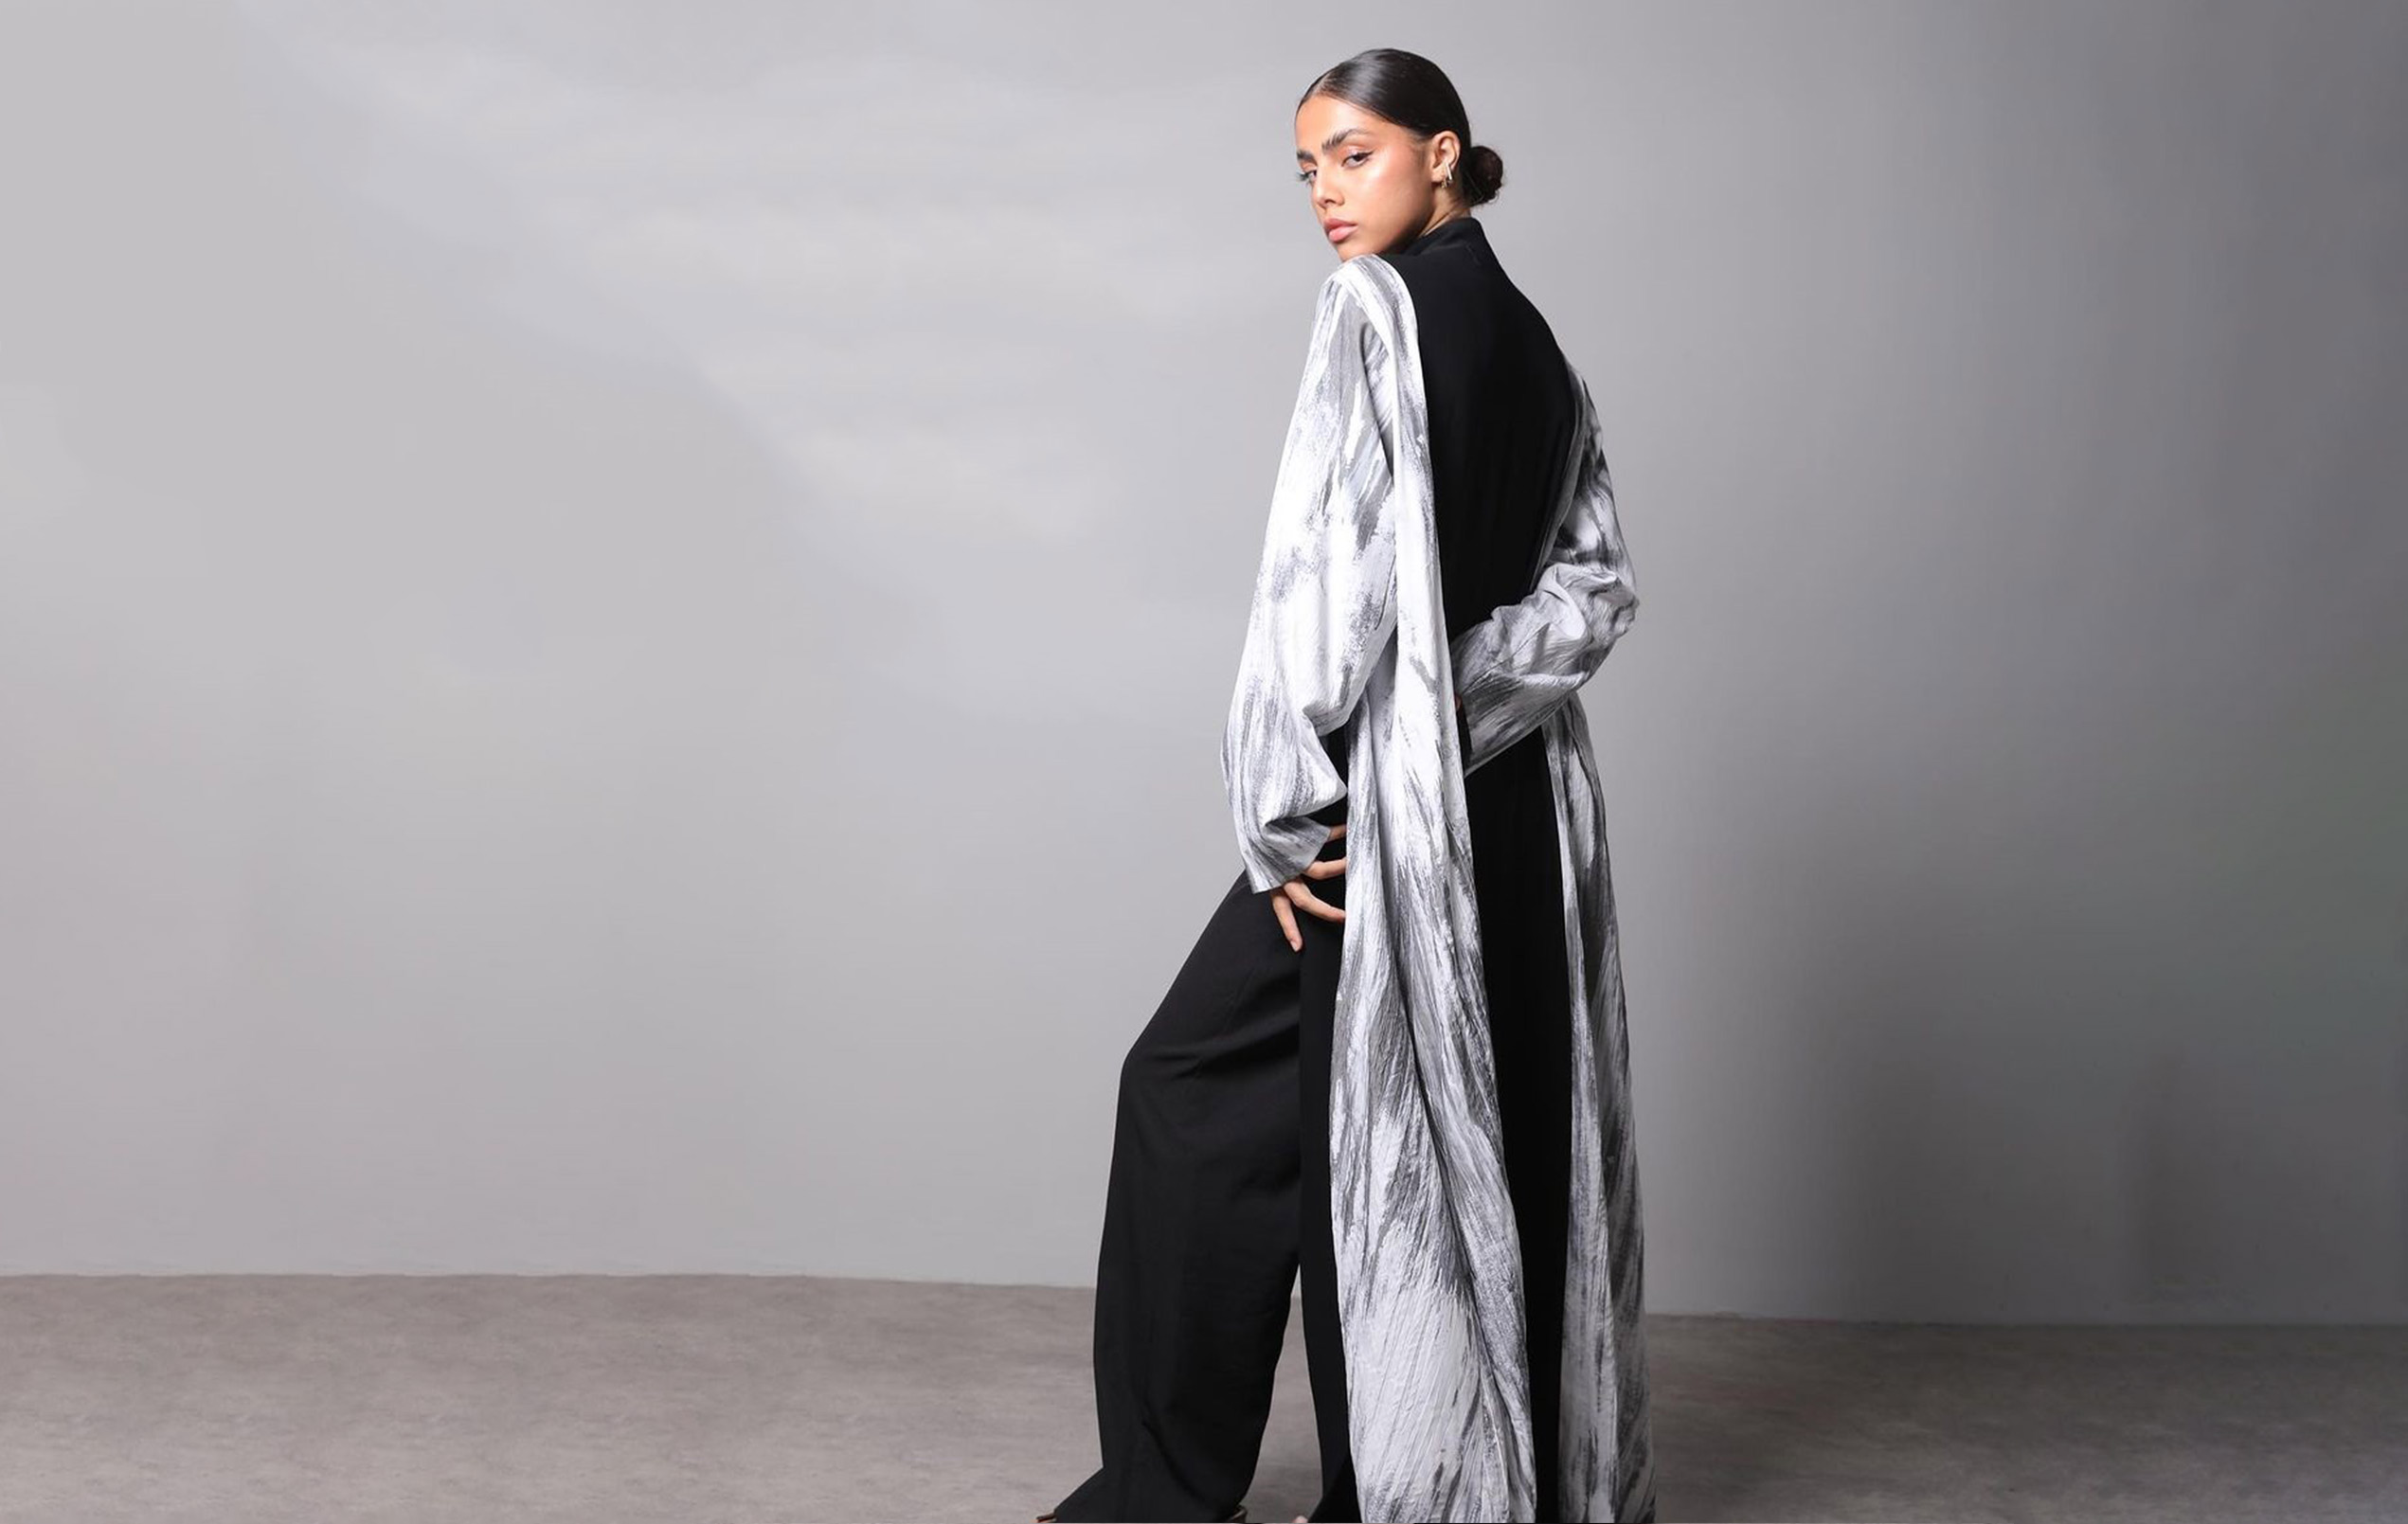 Amber-line-qatari-abaya-fashion-slide01